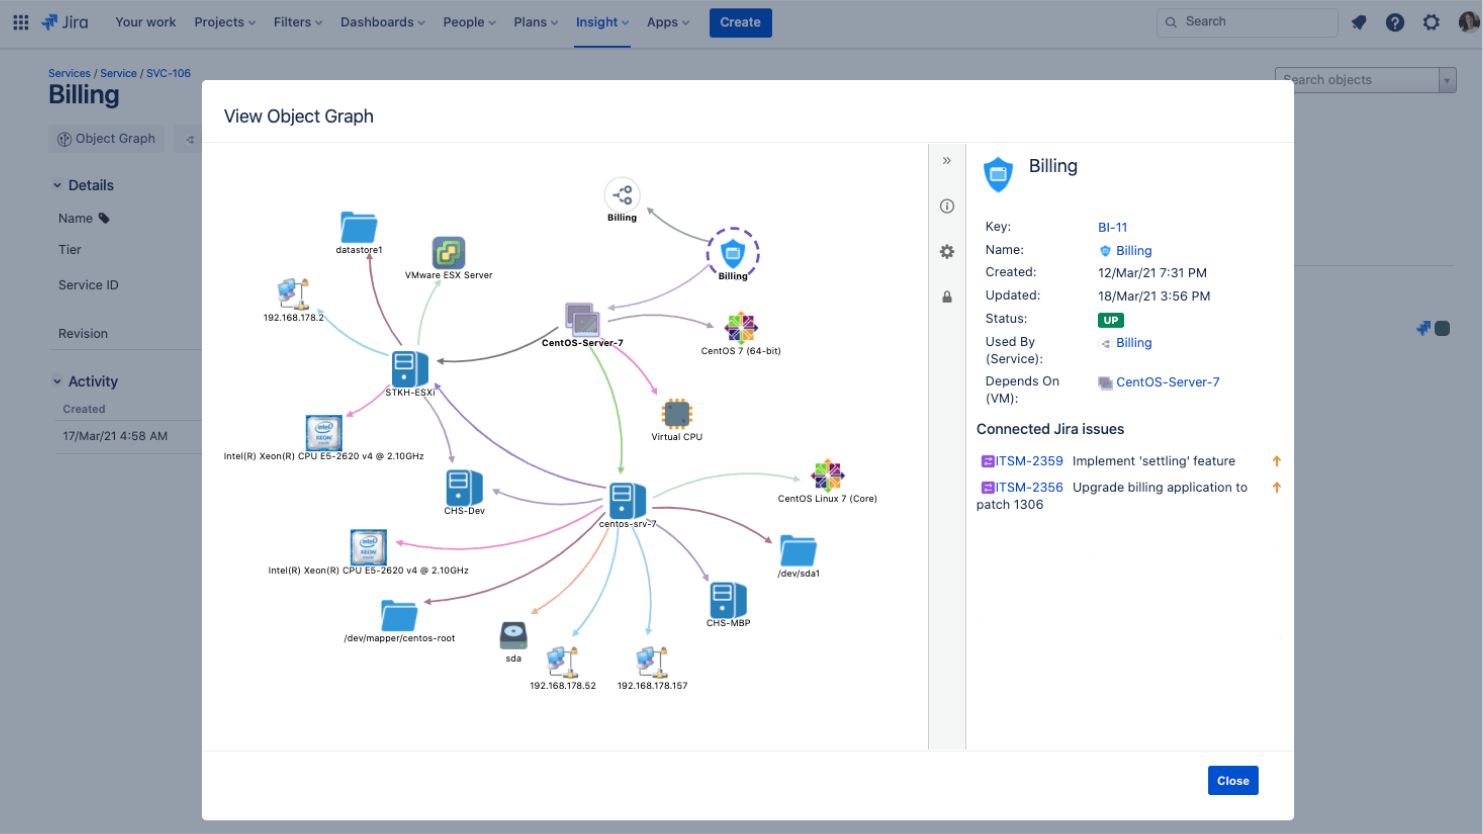 Zrzut ekranu mapy usług przedstawiającej ogólny widok architektury modelu usług